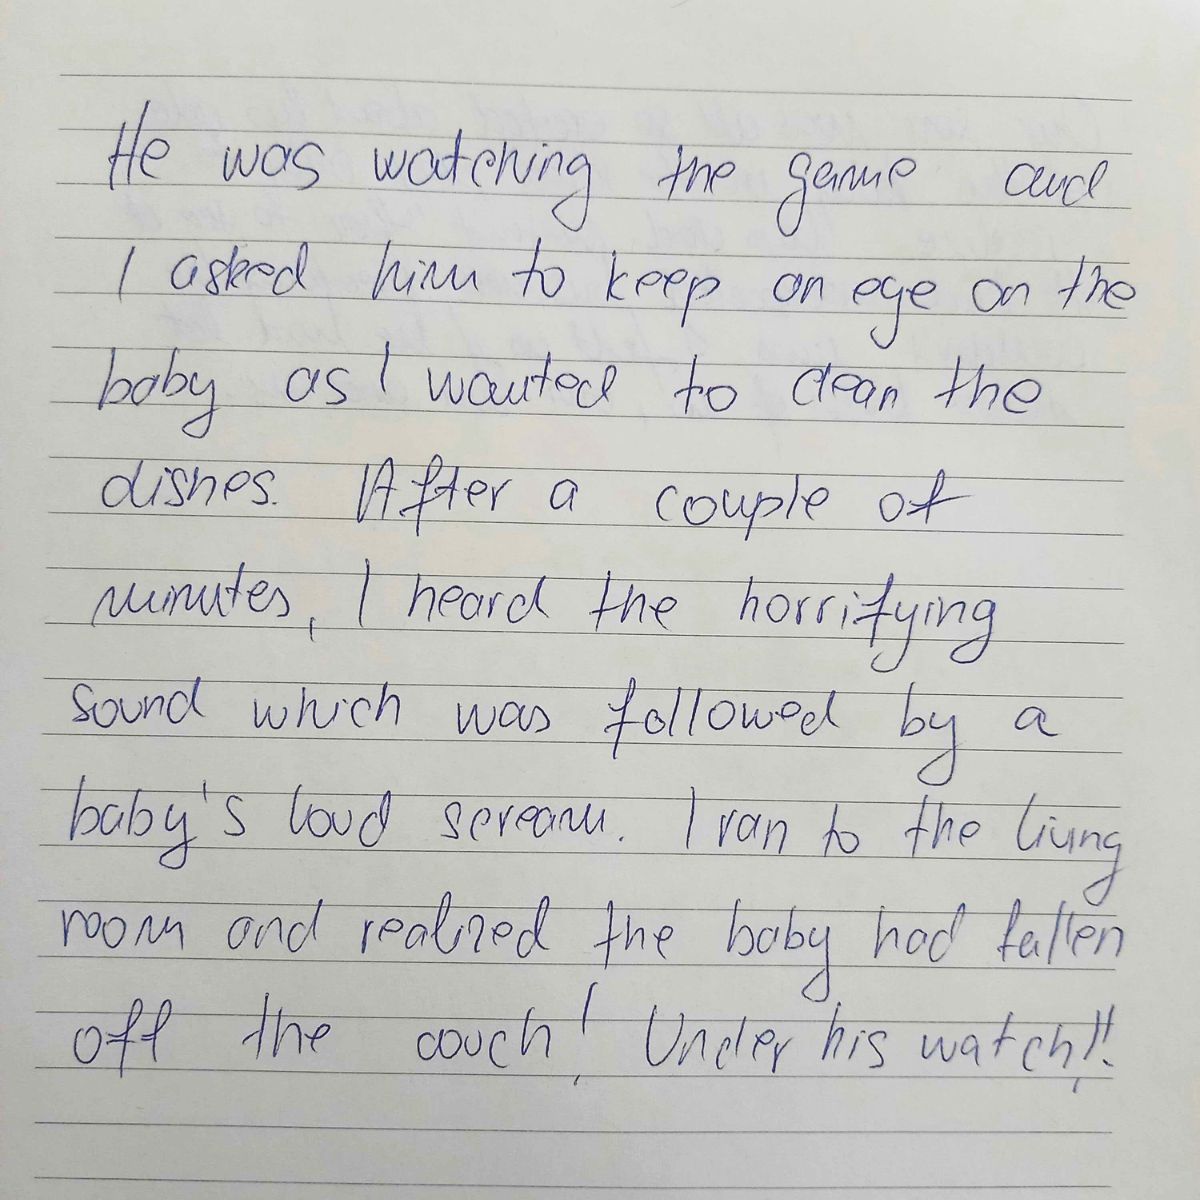 written description of baby falling